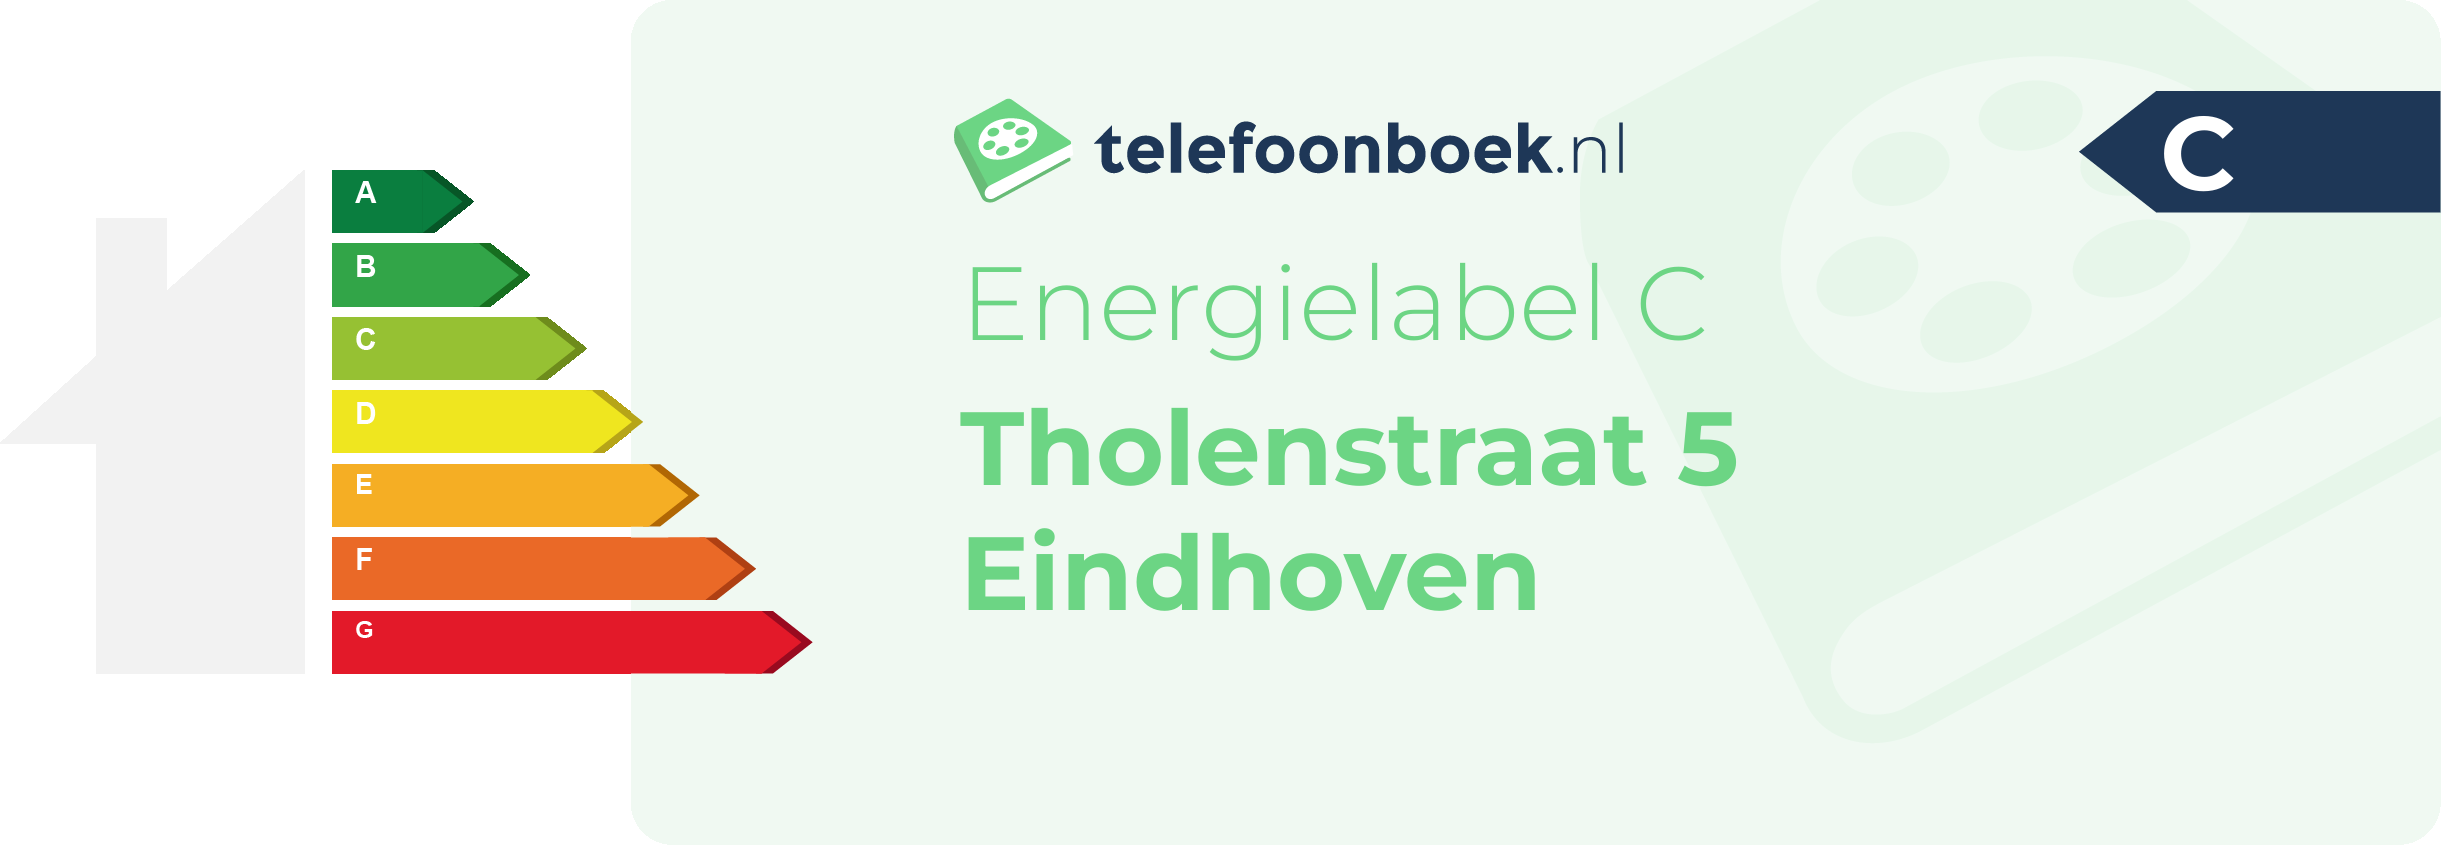 Energielabel Tholenstraat 5 Eindhoven